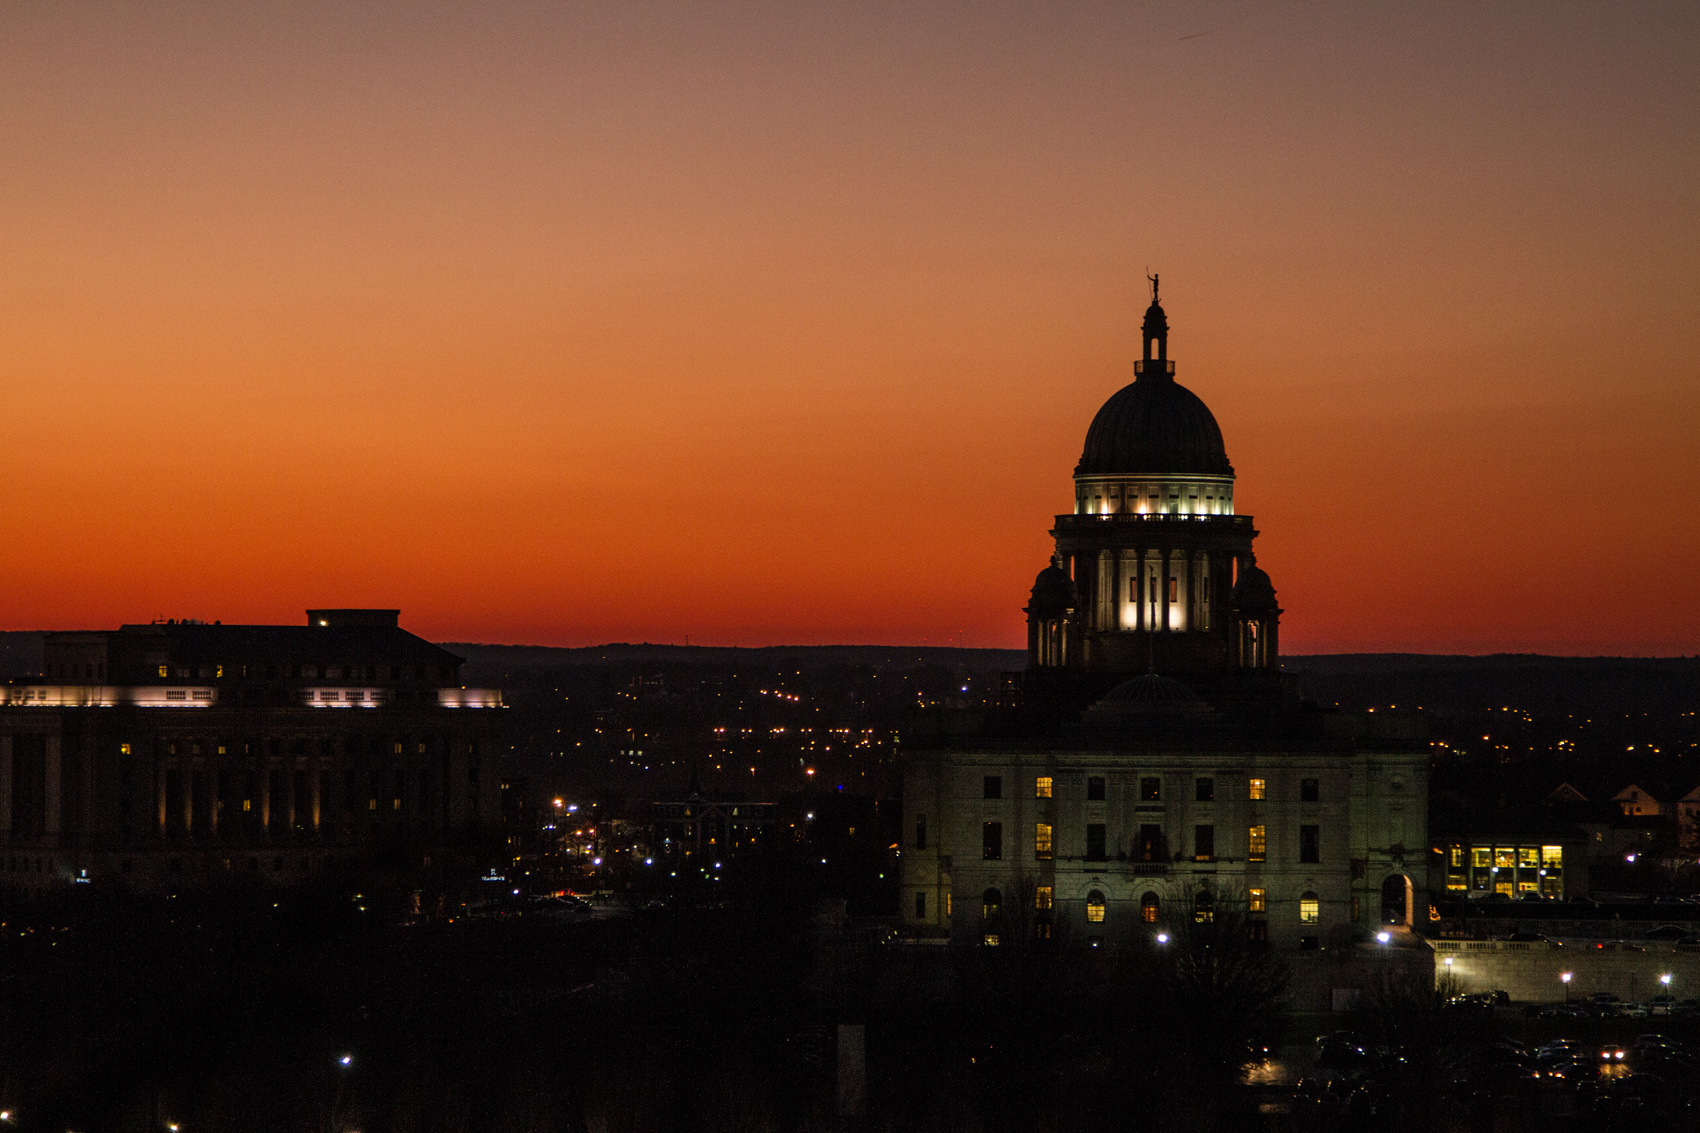 state house dusk background image